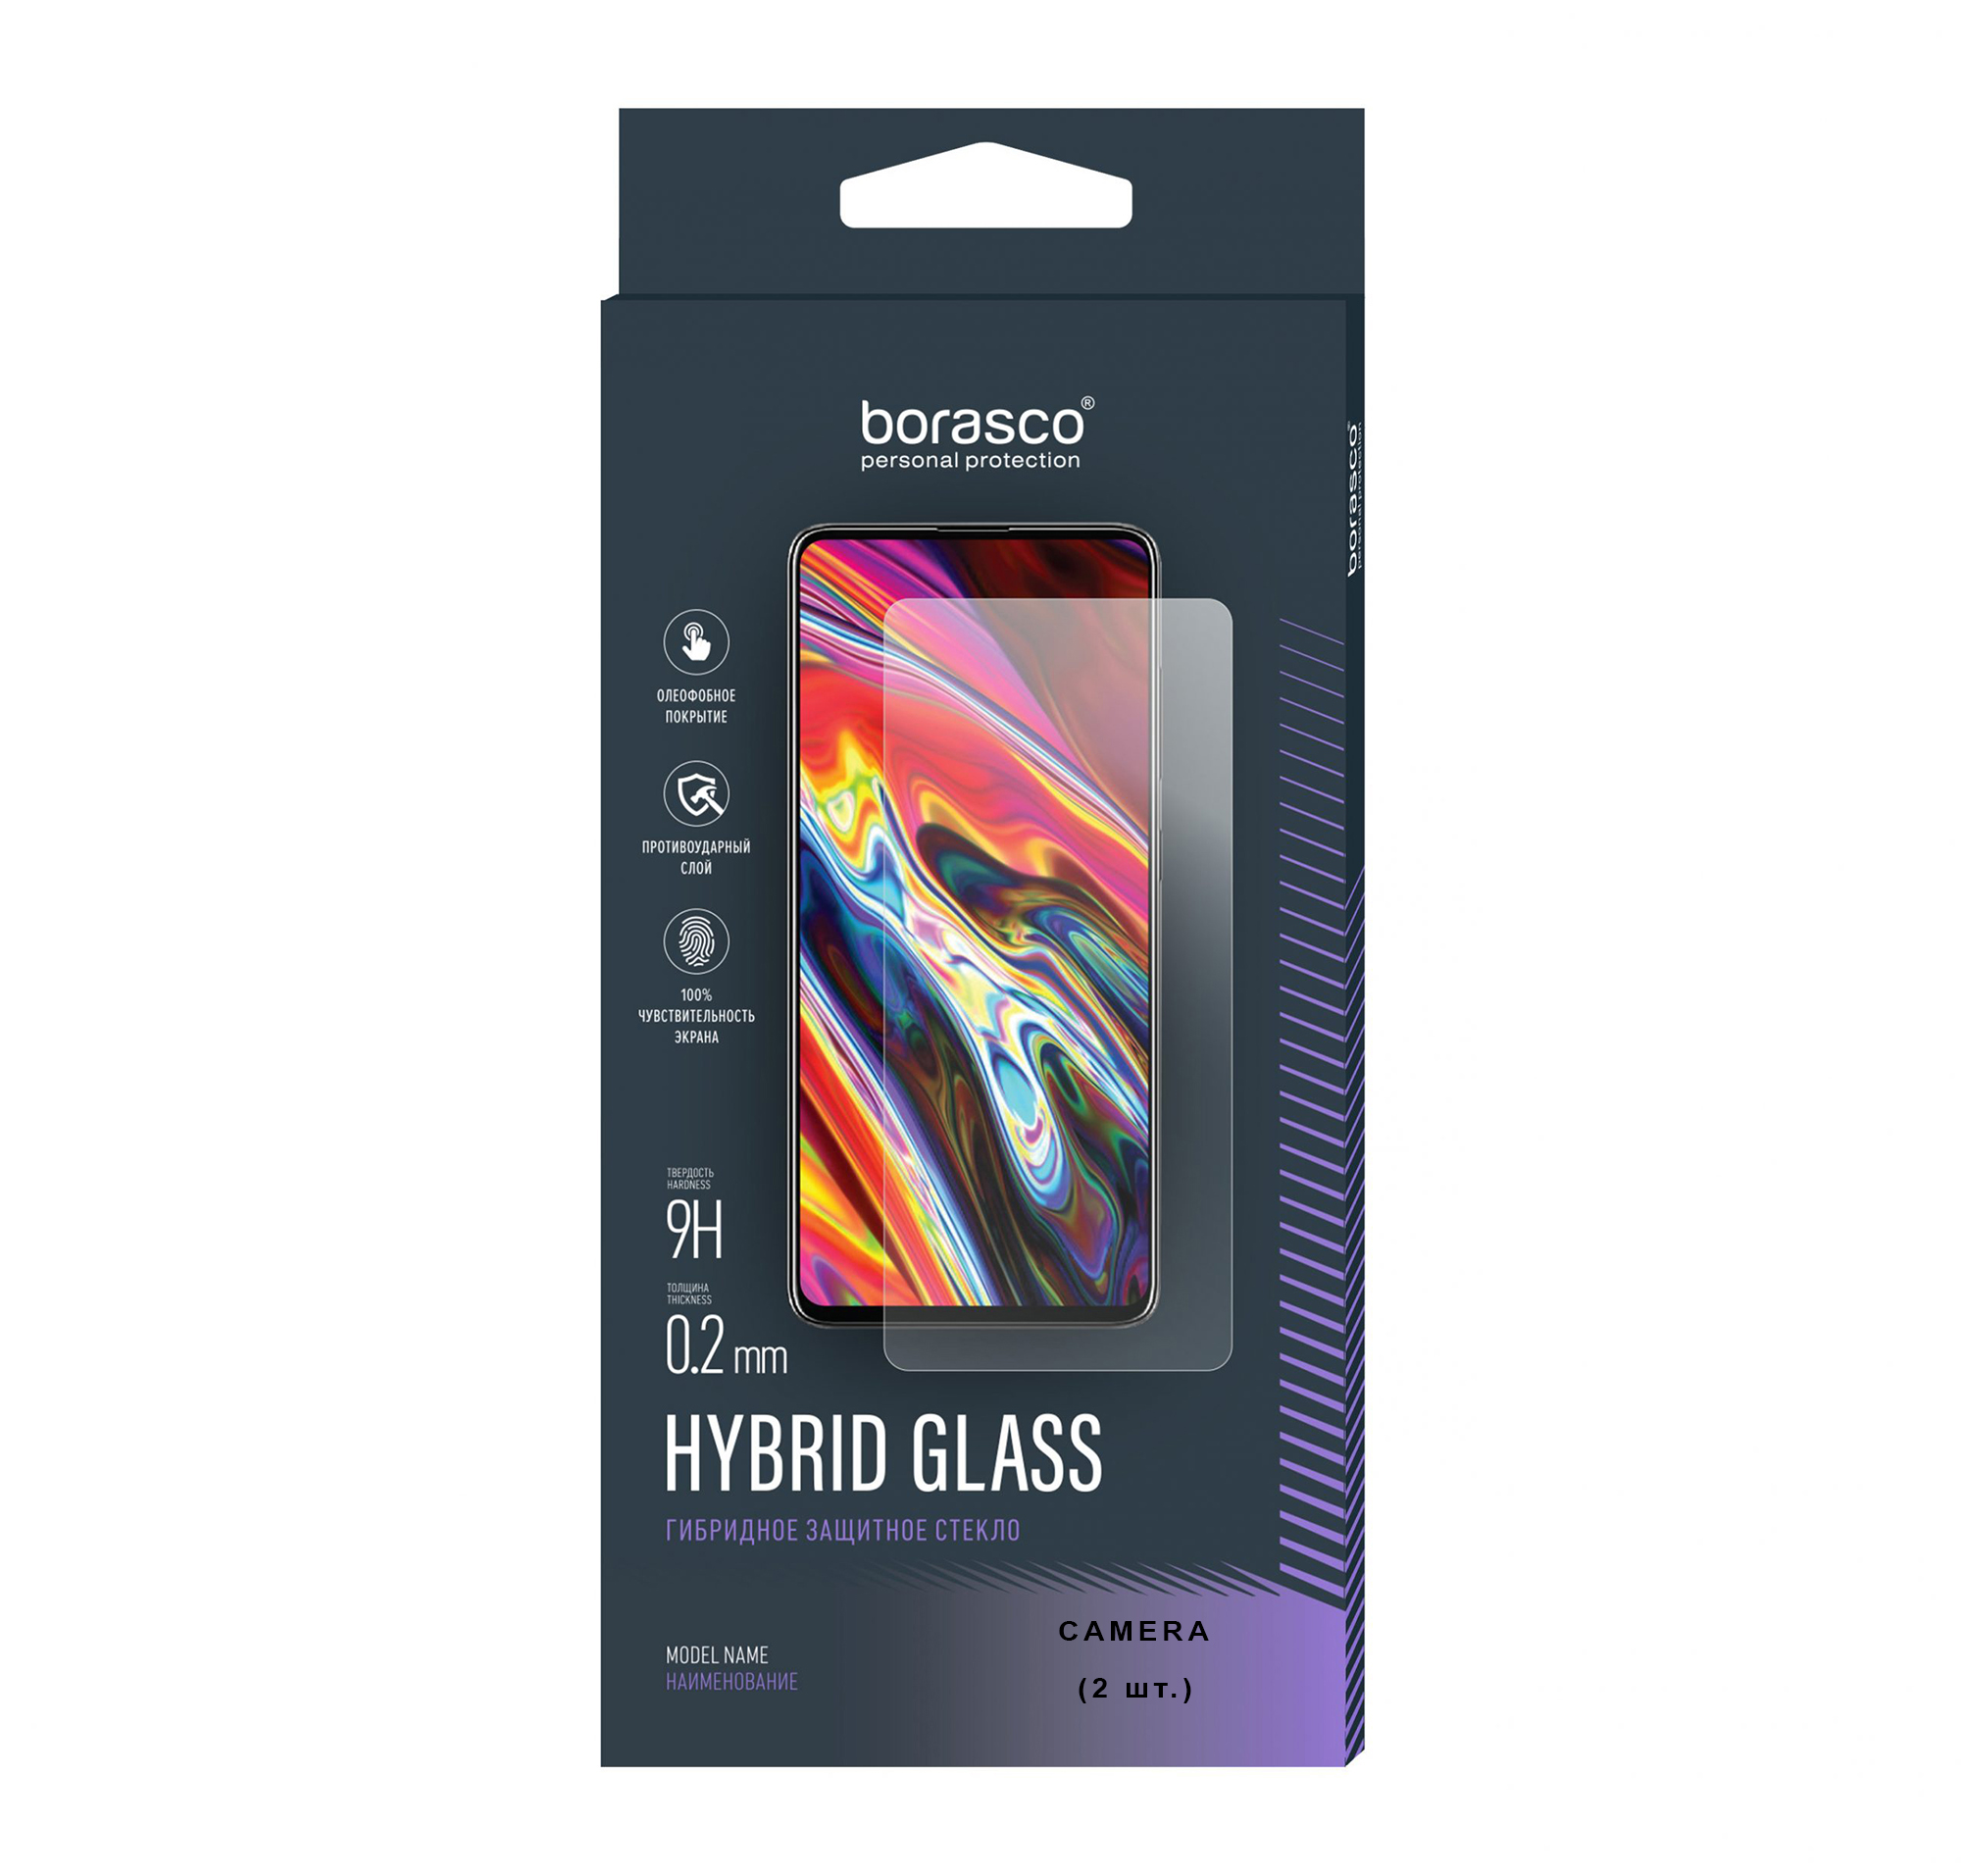 Защитное стекло (Экран+Камера) Hybrid Glass для Xiaomi Redmi 9A защитное стекло для xiaomi redmi 9a 2020 для ксиаоми 9d на весь экран